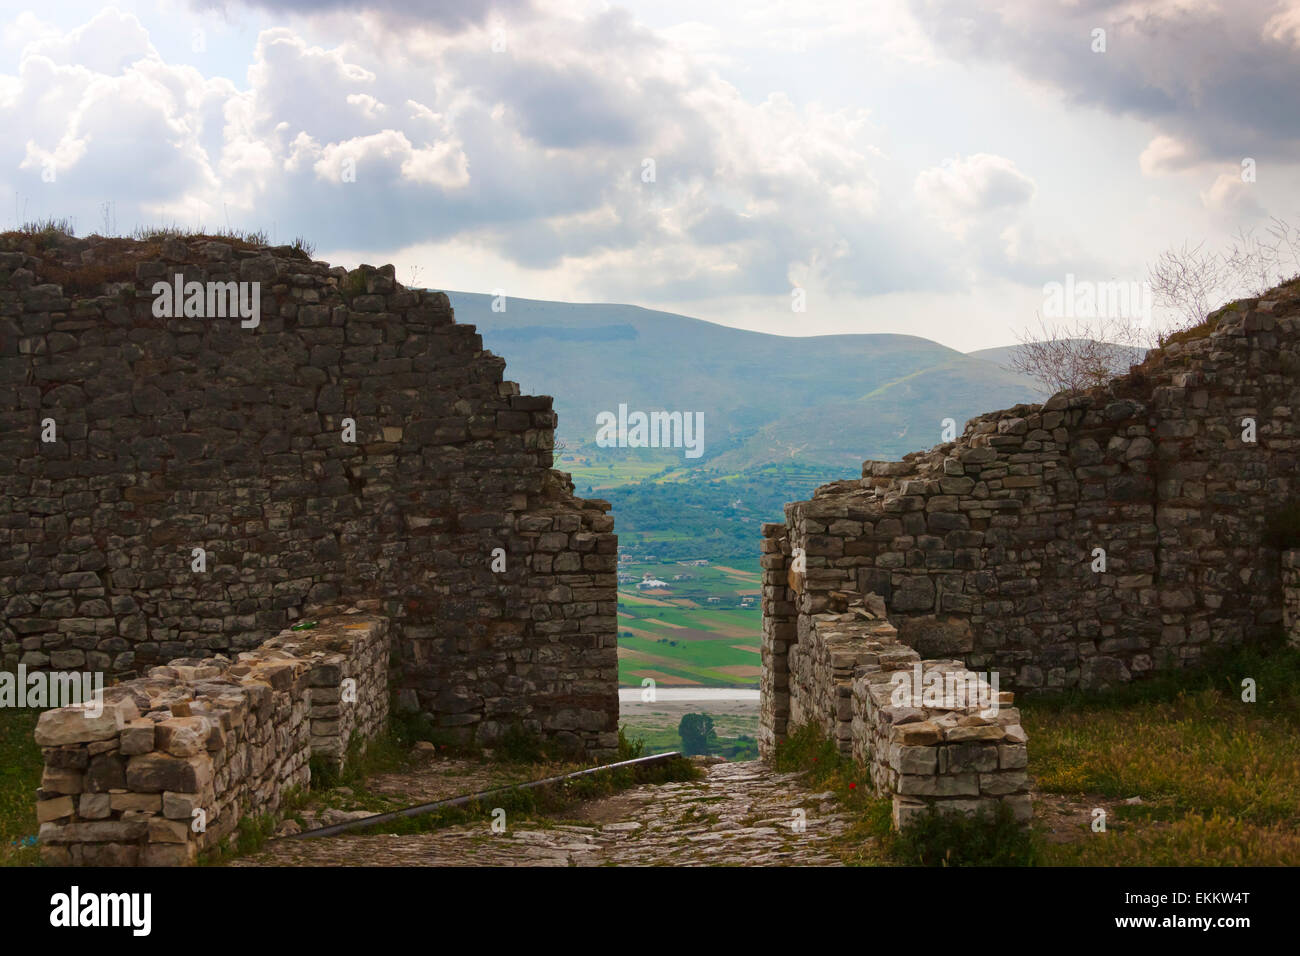 La citadelle et le château de Berat (site du patrimoine mondial de l'UNESCO), de l'Albanie Banque D'Images